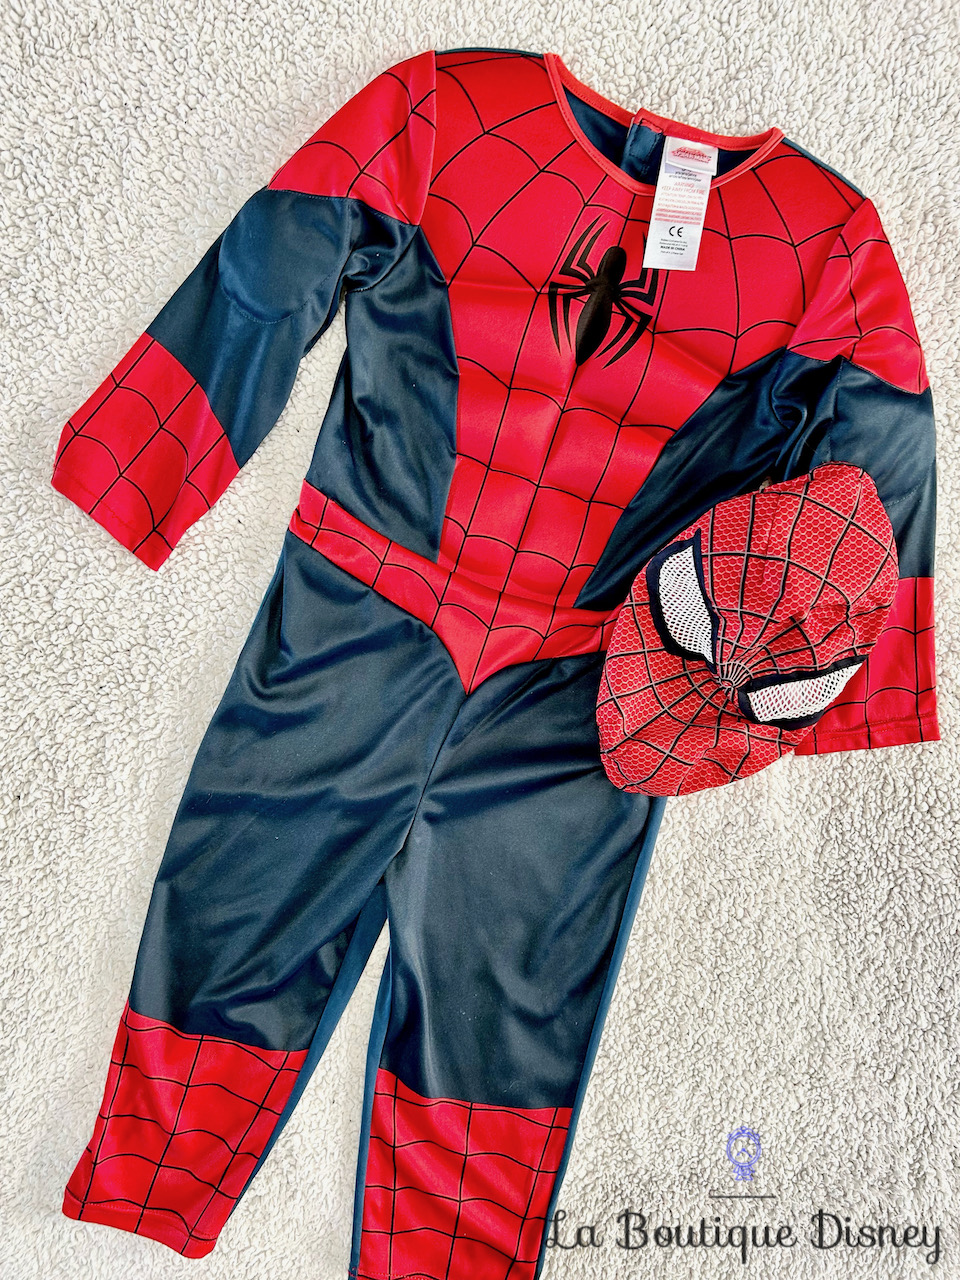 Déguisement Spider Man Ultimate Marvel Disney Rubies taille 3/4 ans combinaison bleu rouge masque